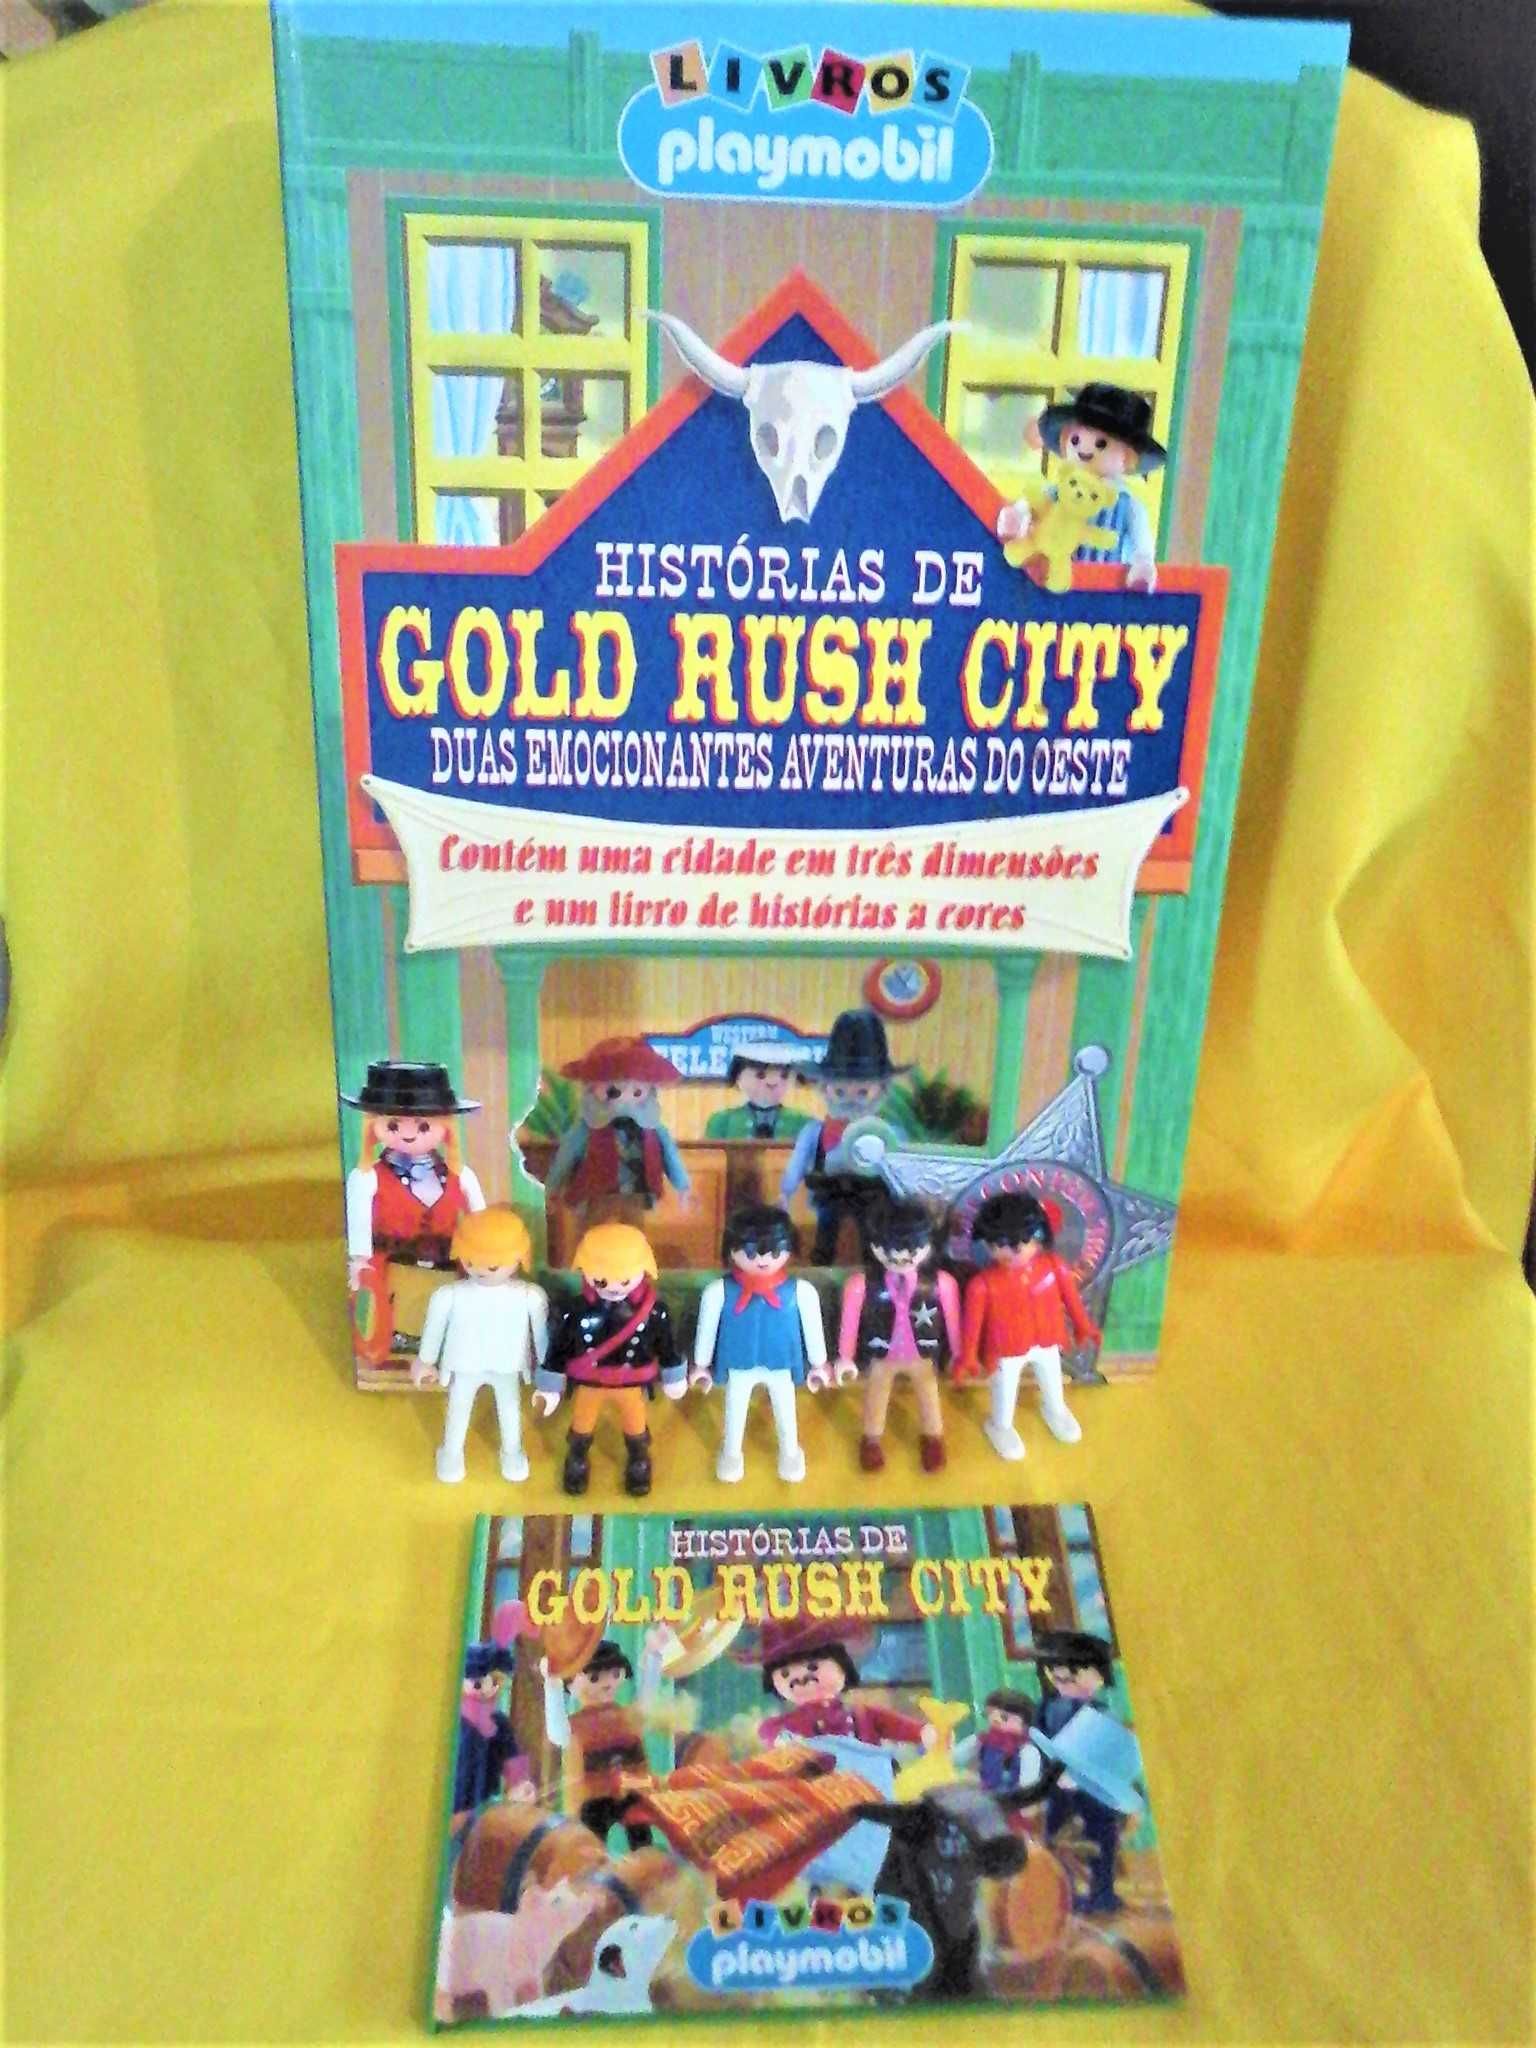 Livros Playmobil, 1 cidade 3 Dimensões, 1 Livro d Histórias, 5 Figuras